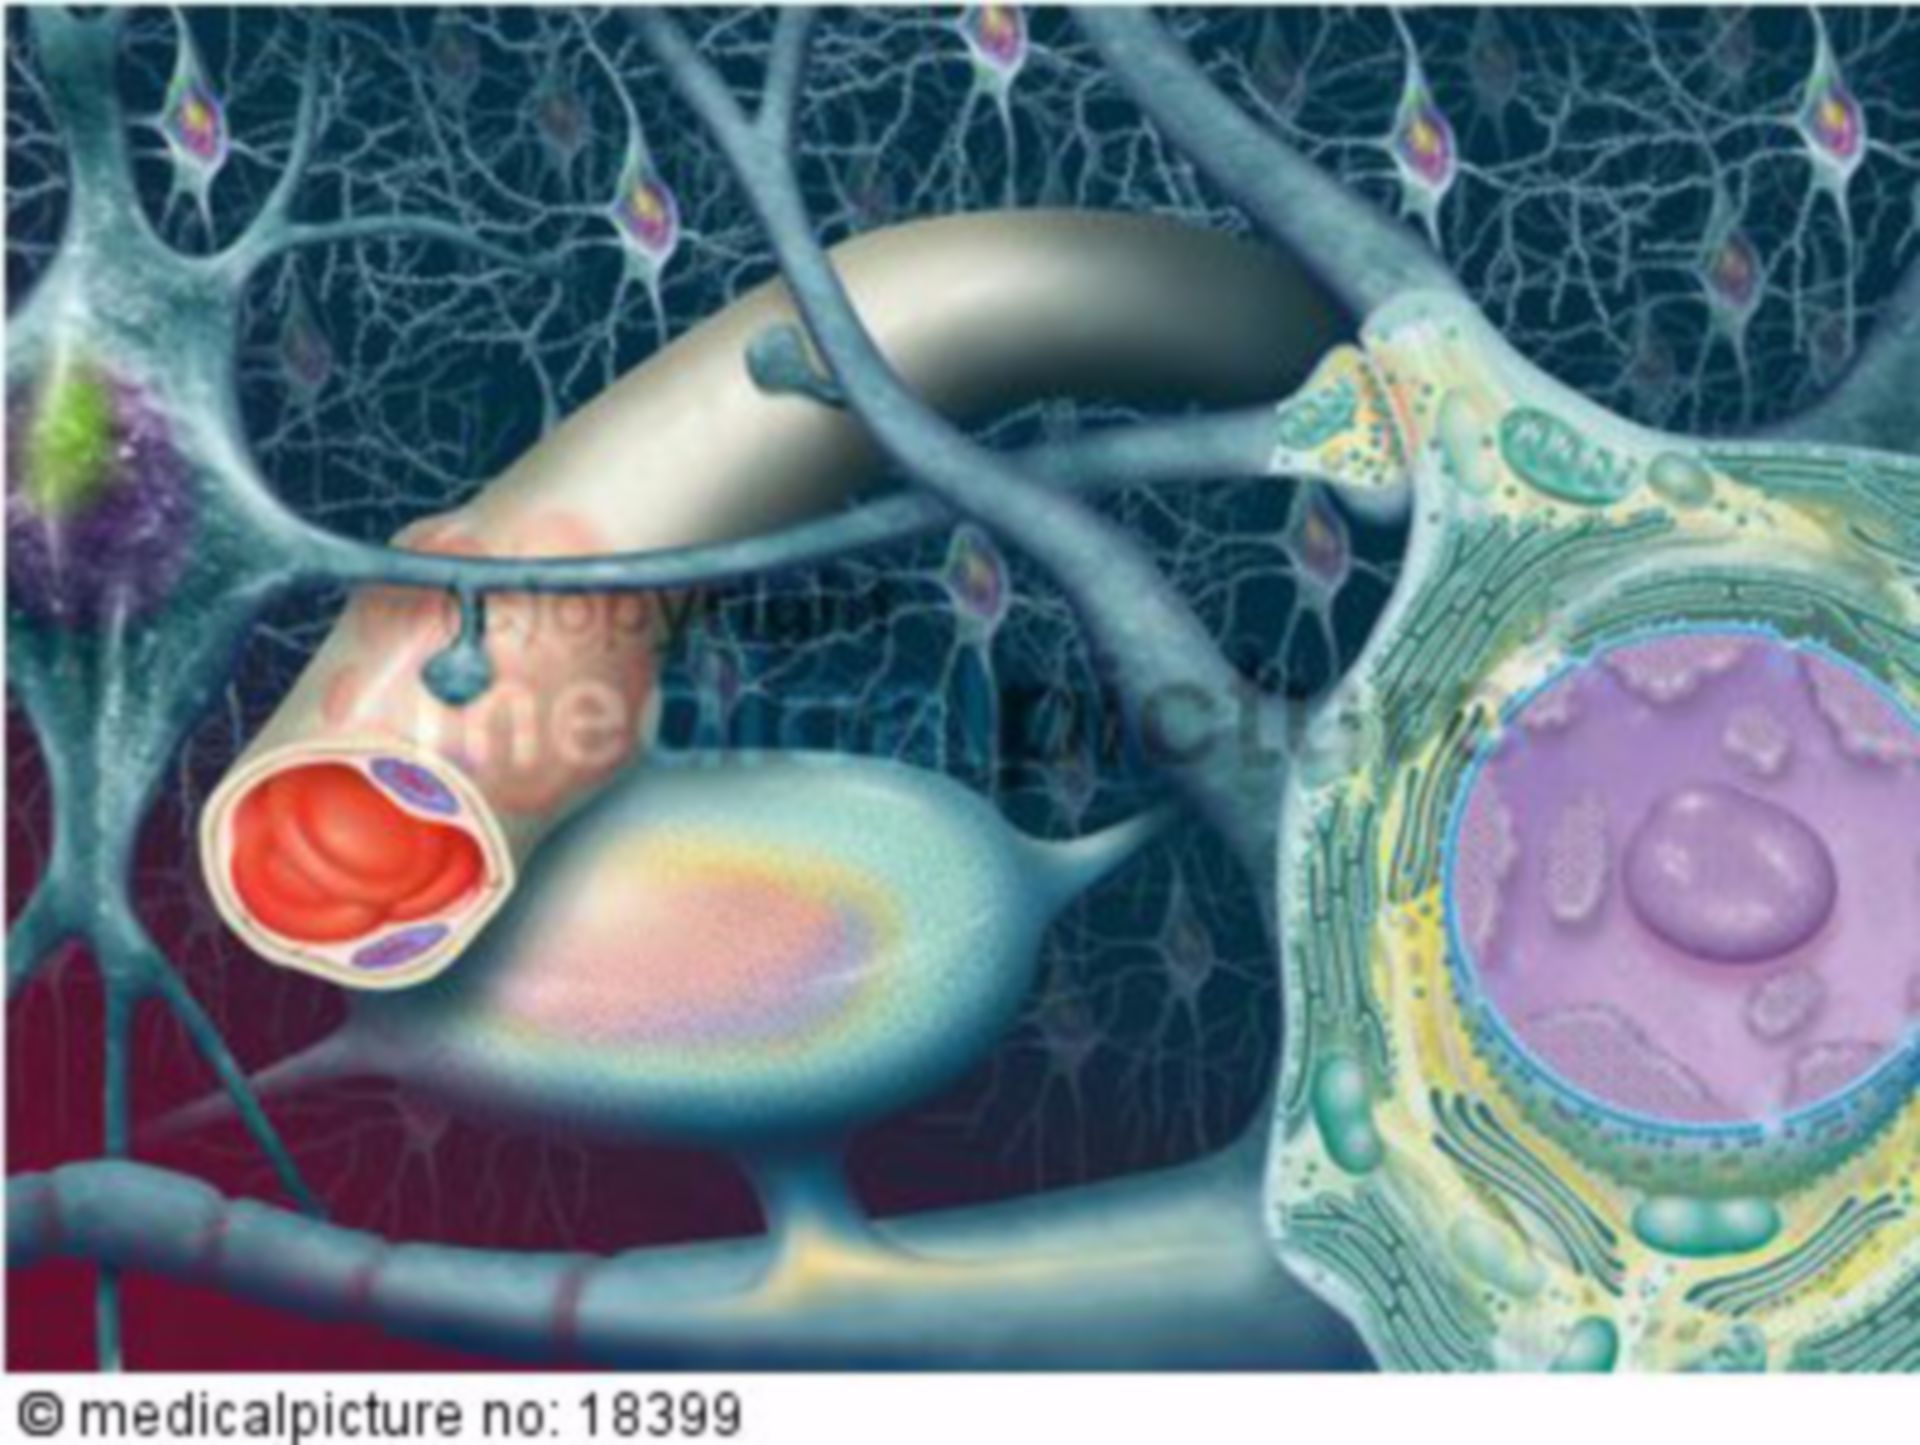  Nervenzellen und Blutgefäss des Gehirns, Neurons and vessels of the brain 
